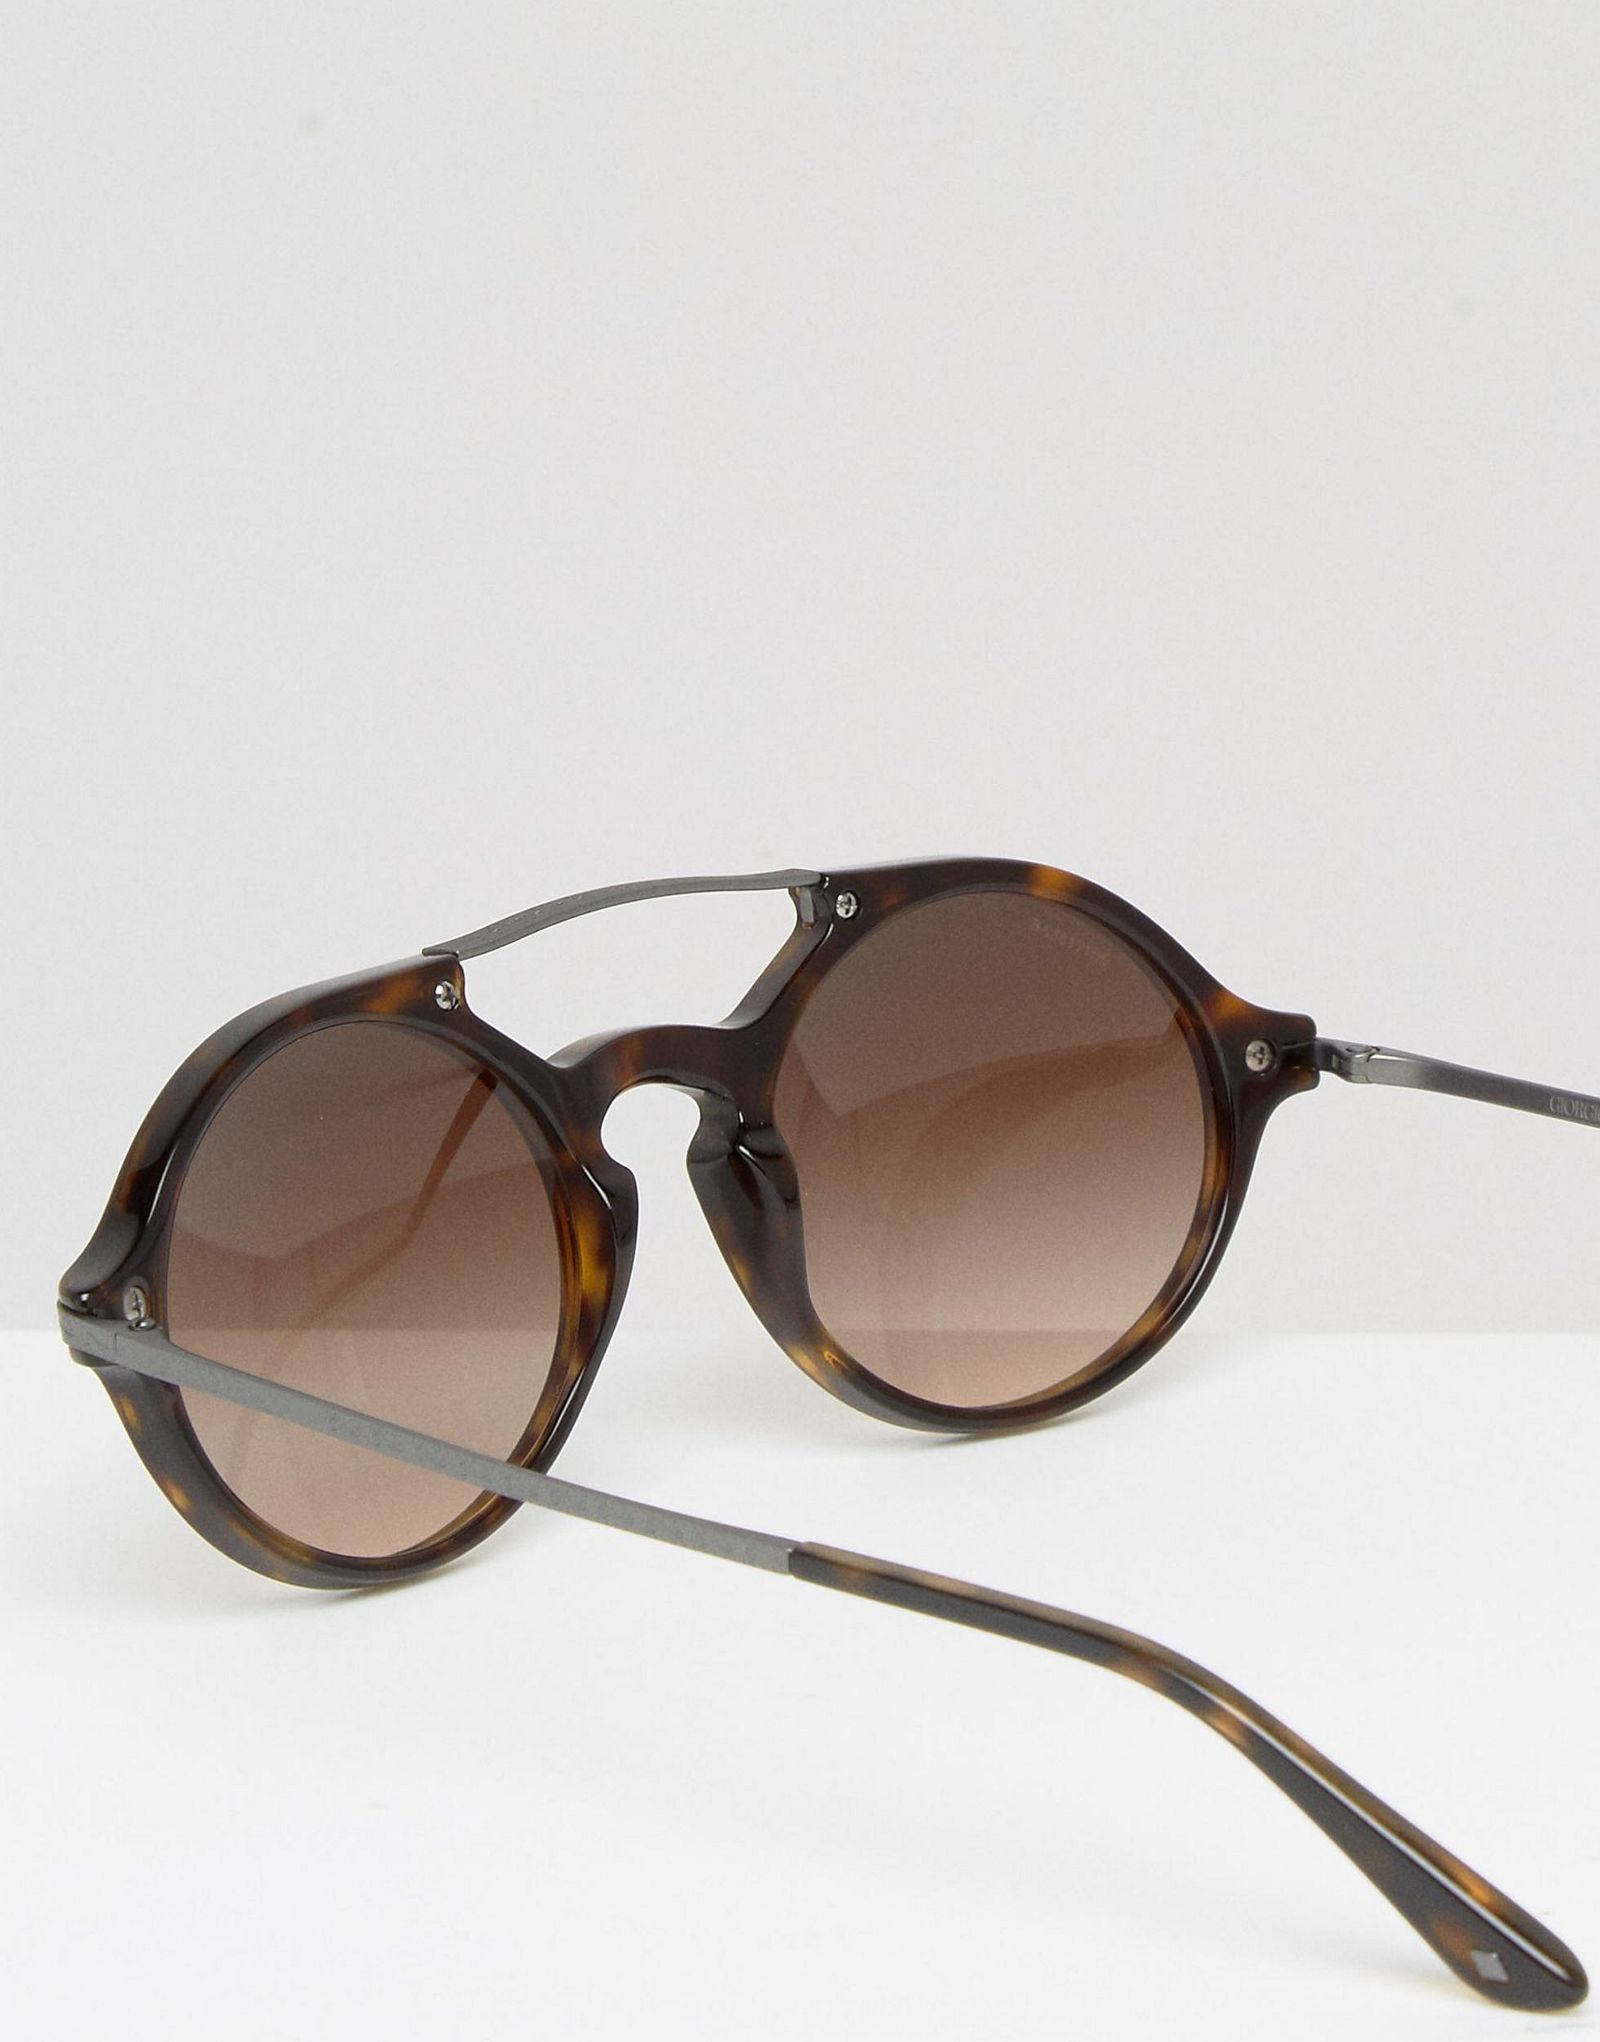 Giorgio Armani Round Sunglasses Havanna Brown